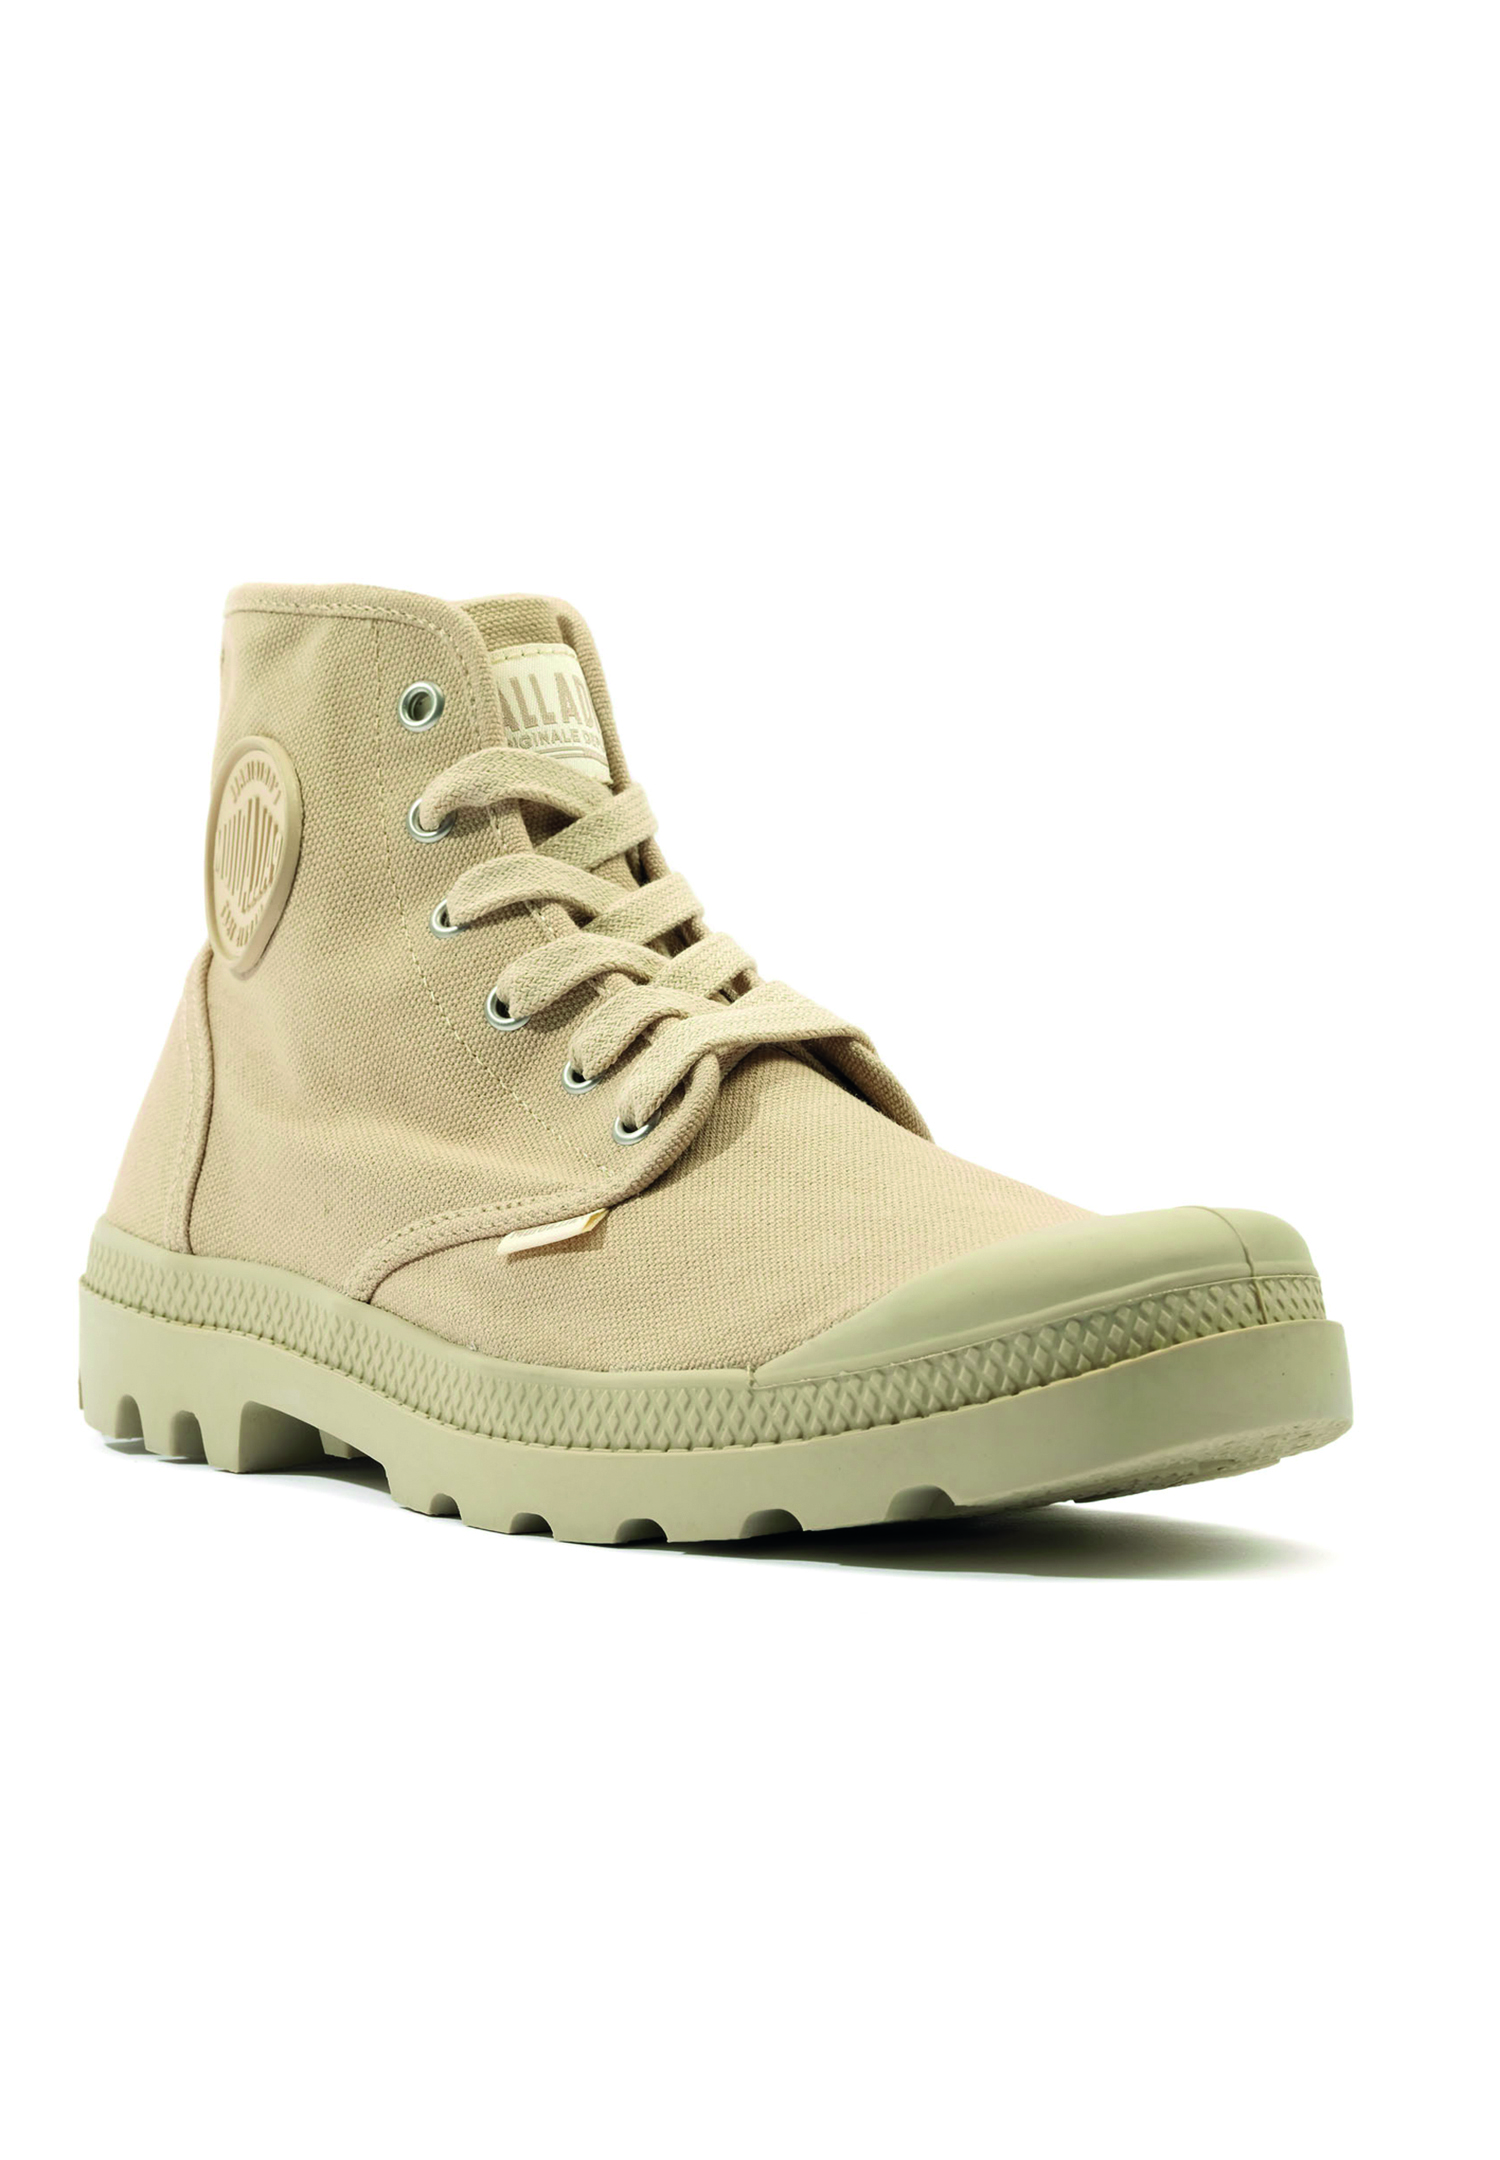 Palladium Herren US Pampa Hi H Boots Stiefelette 02352 beige, Schuhgröße:42 EU